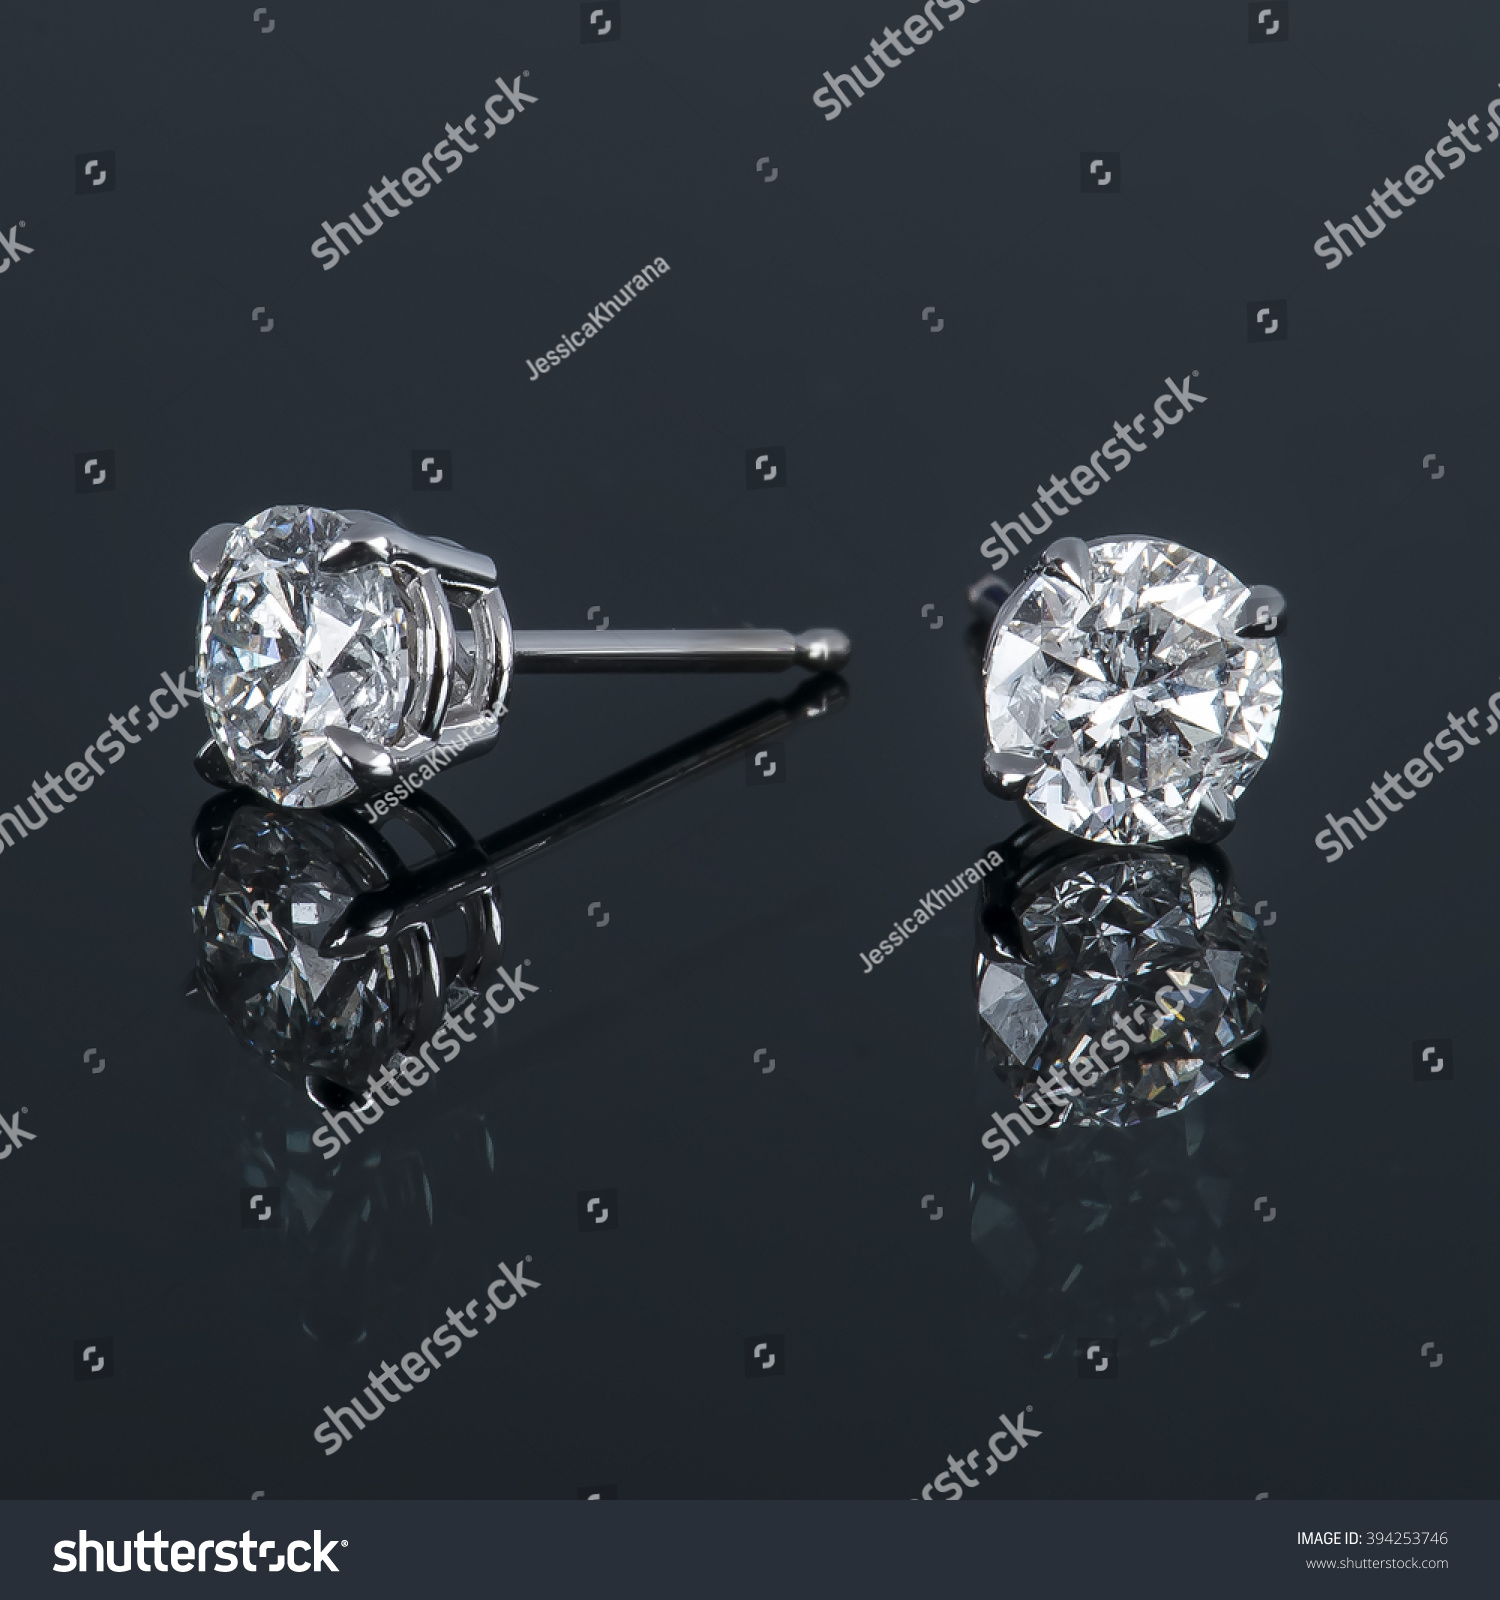 diamond stud earrings #394253746